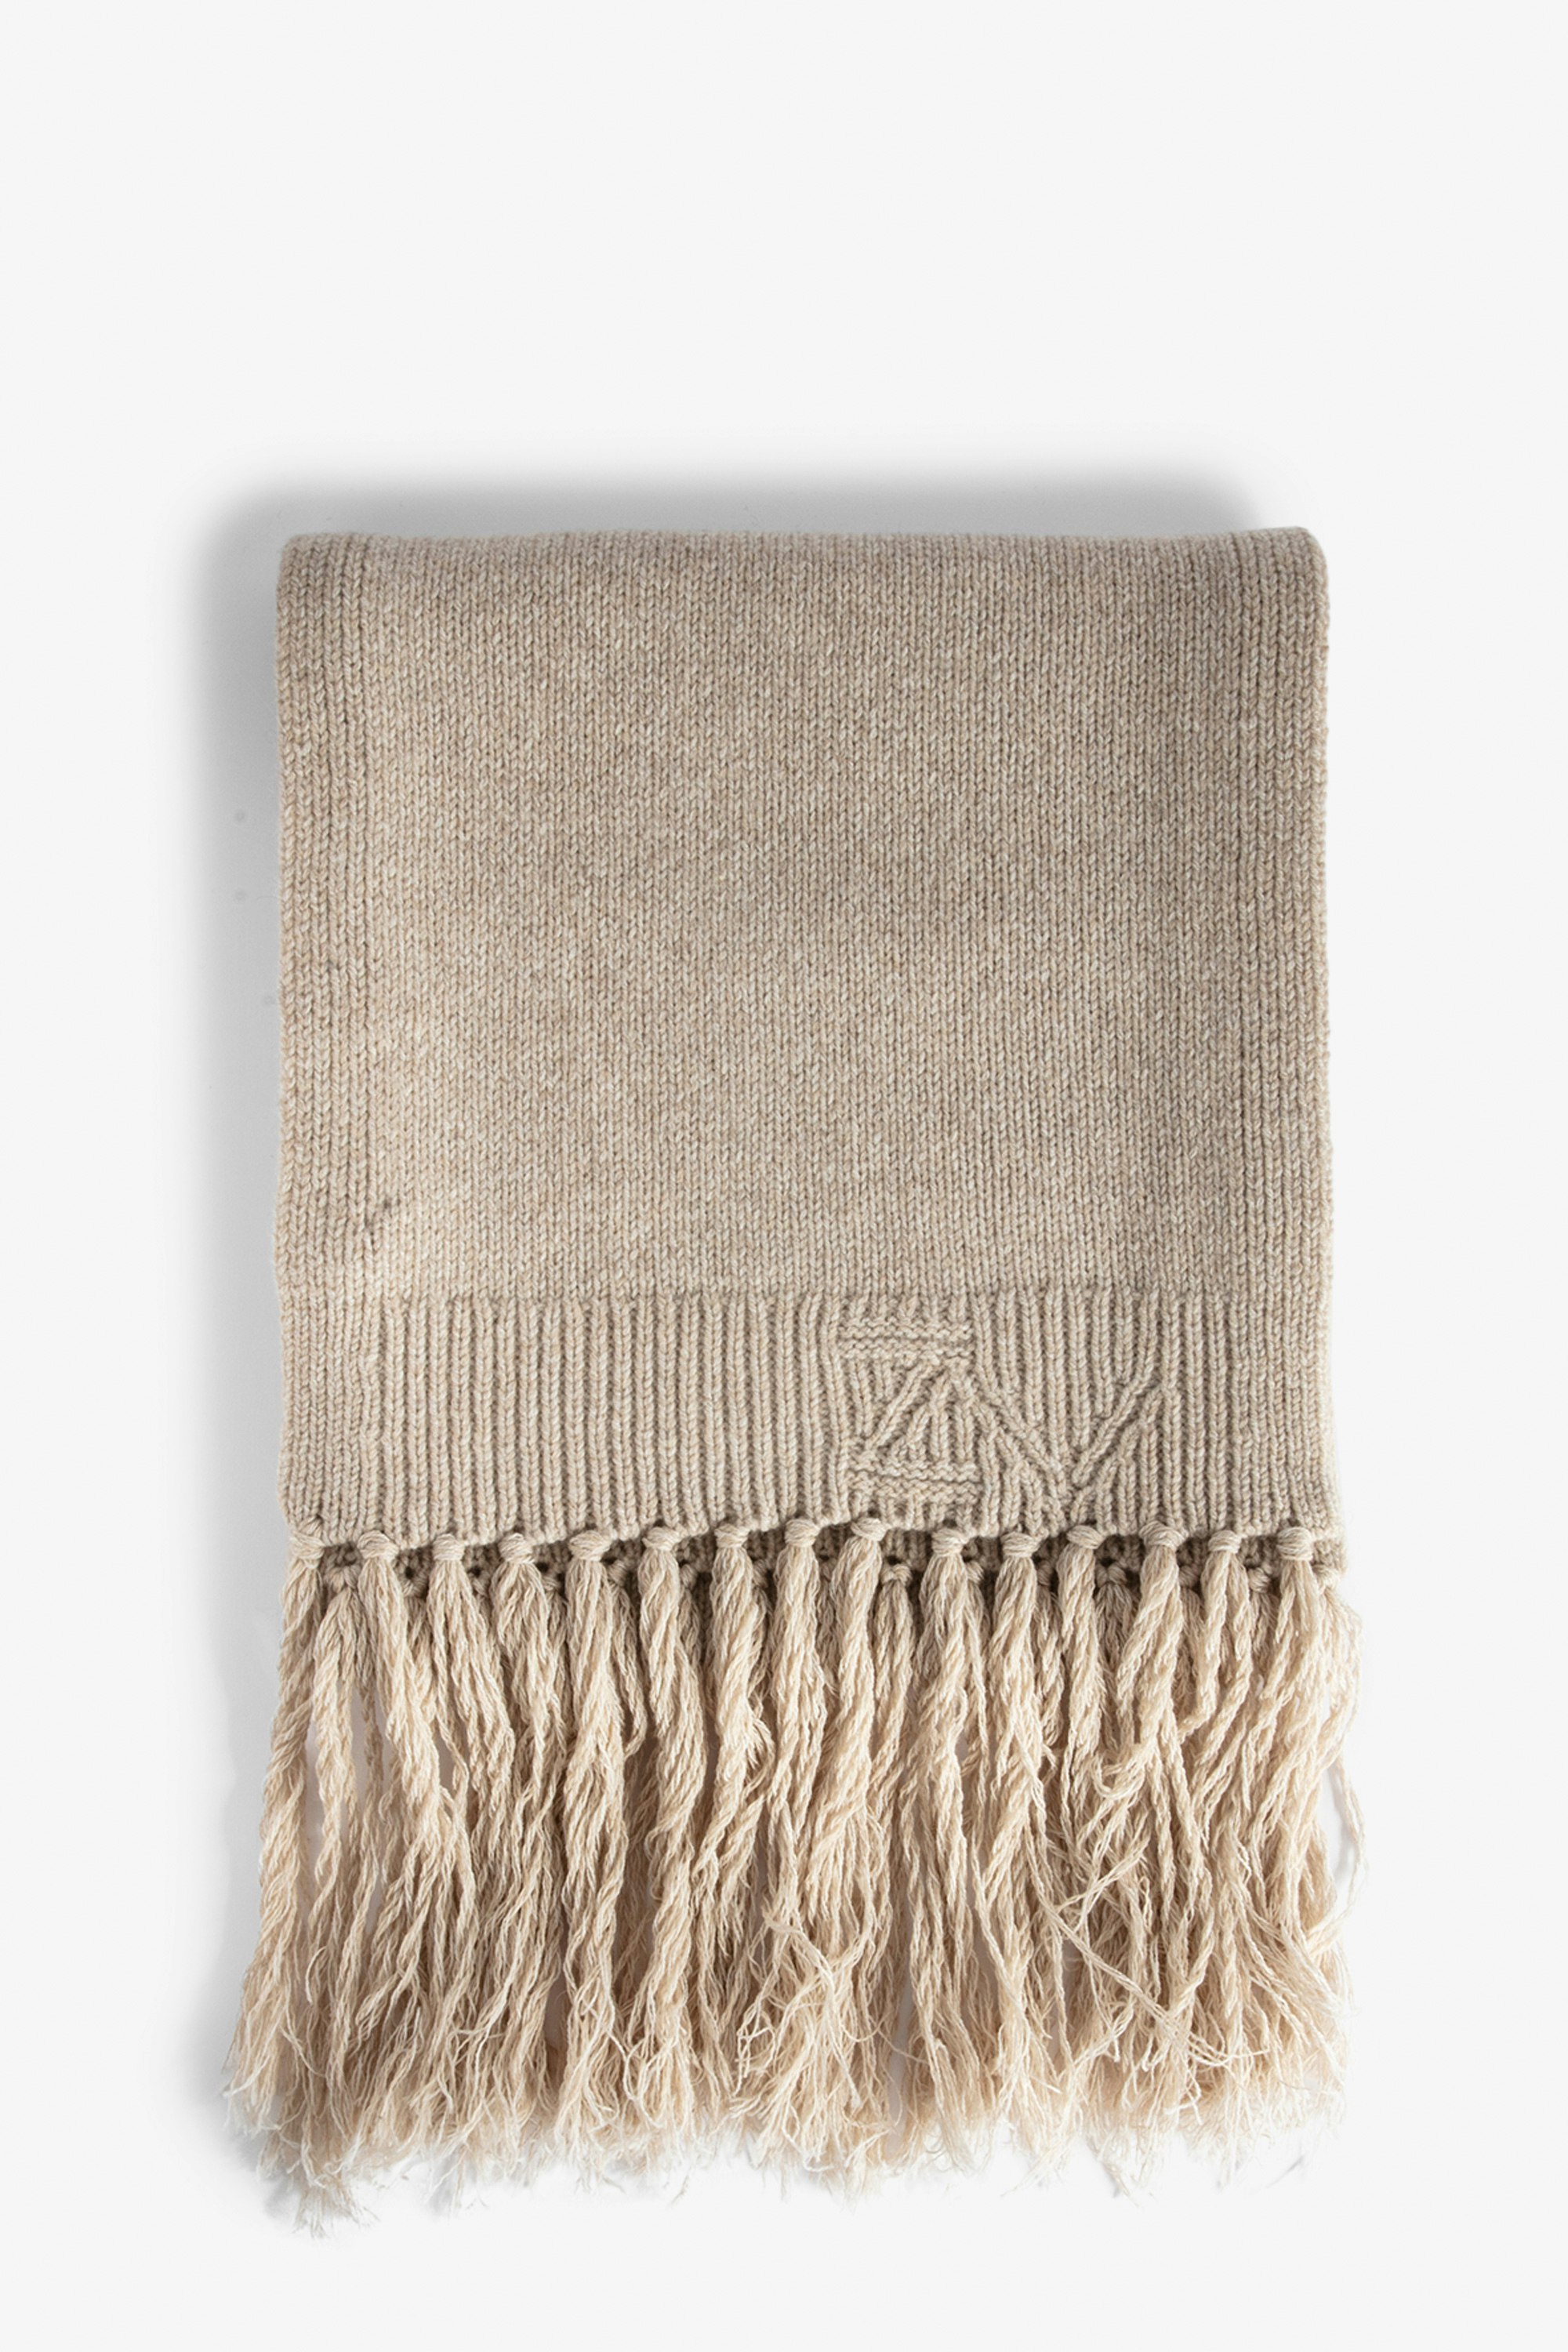 Leila Scarf Women’s long fringed beige wool mix scarf.